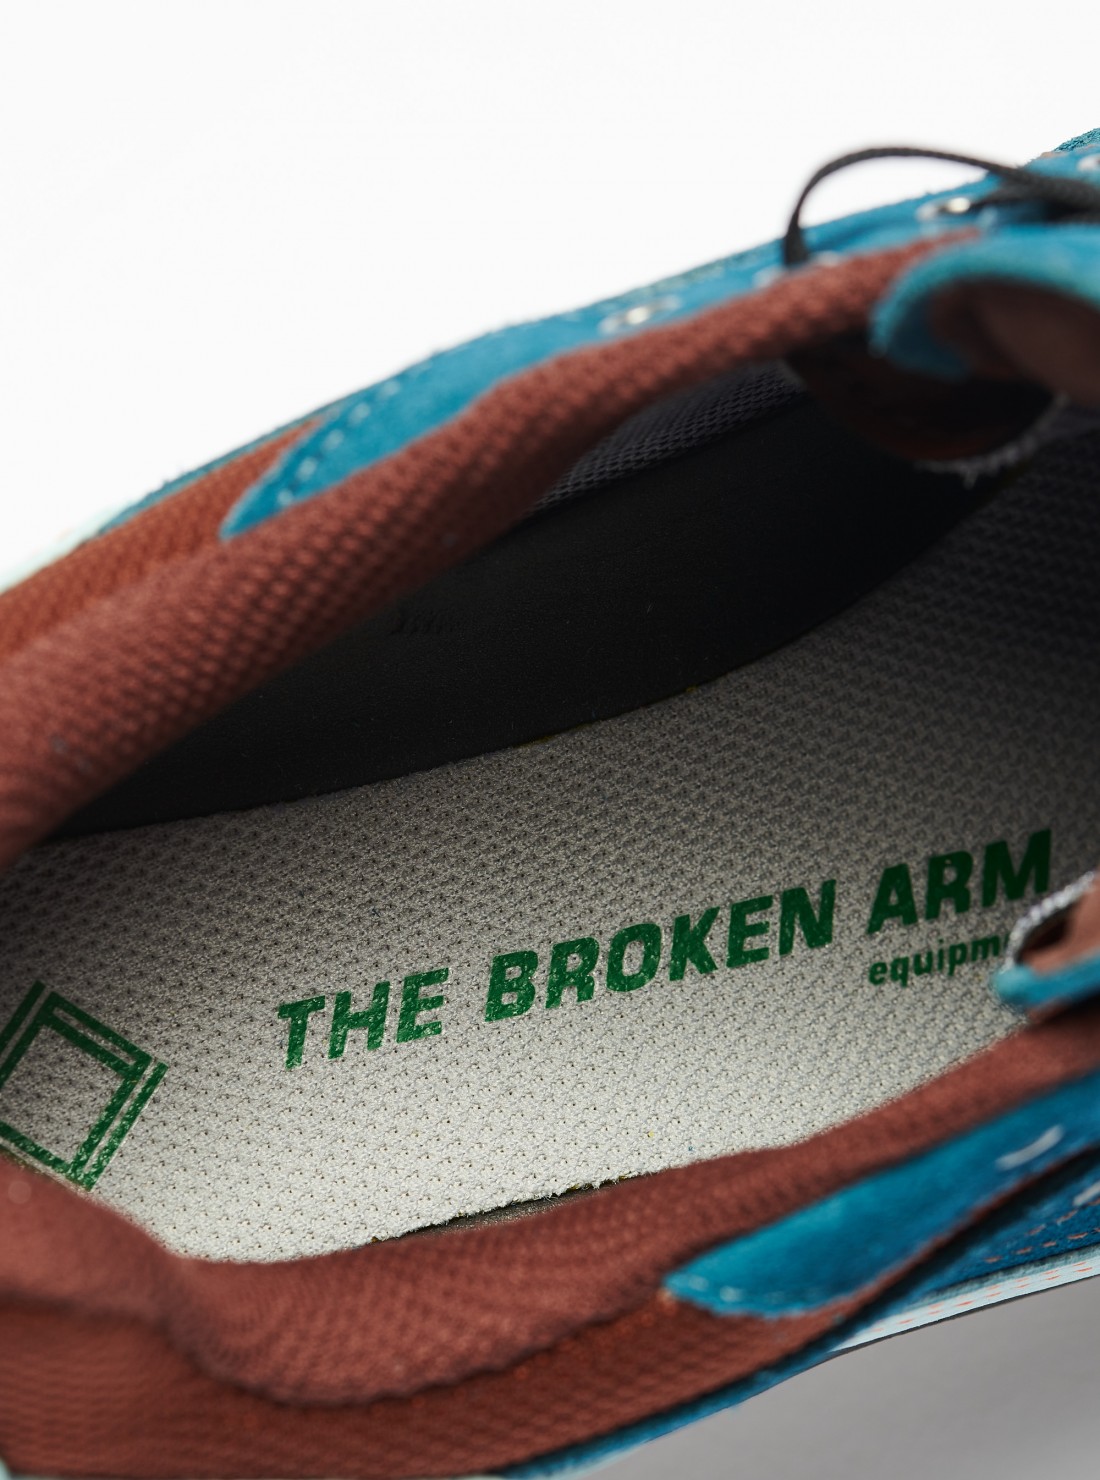 The Broken Arm X-Désalpes